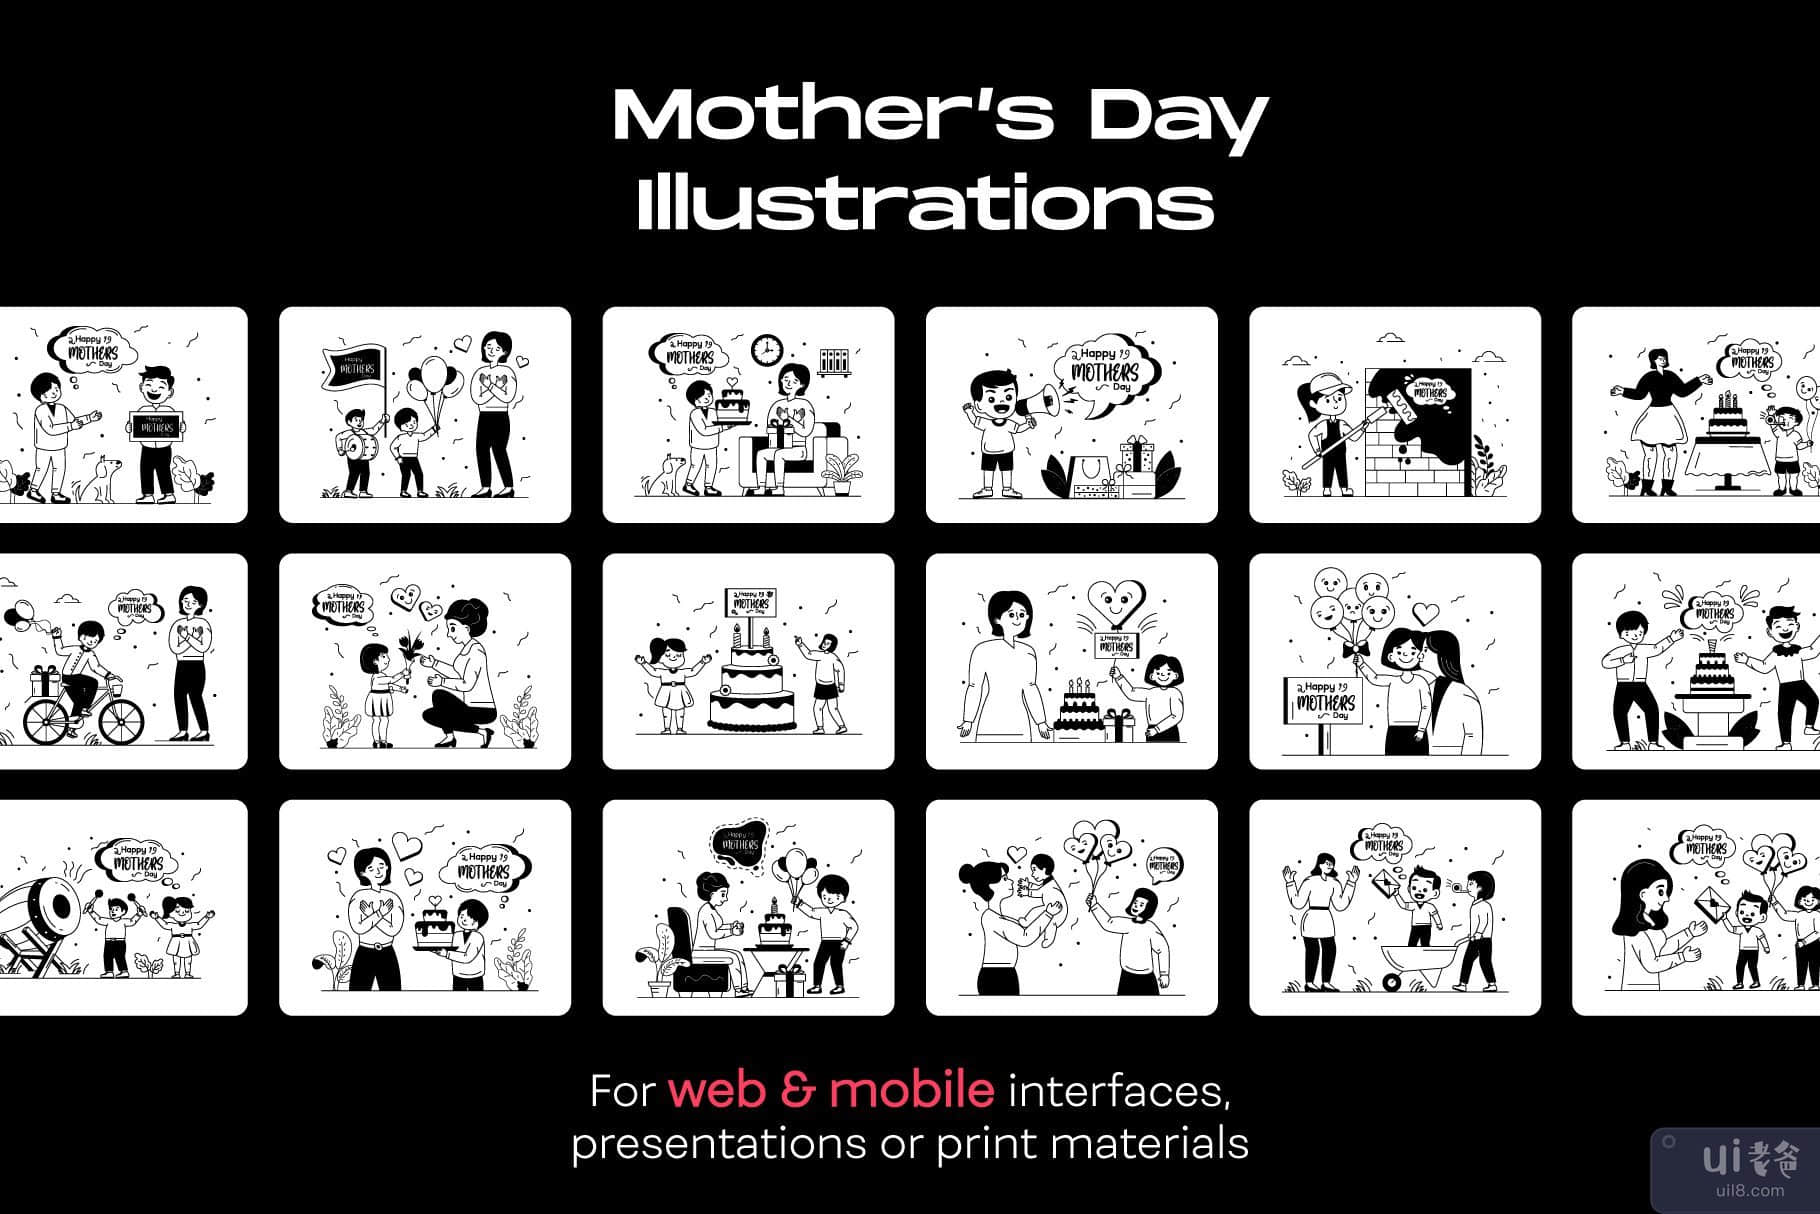 25 个母亲节插图(25 Mother’s Day Illustrations)插图6